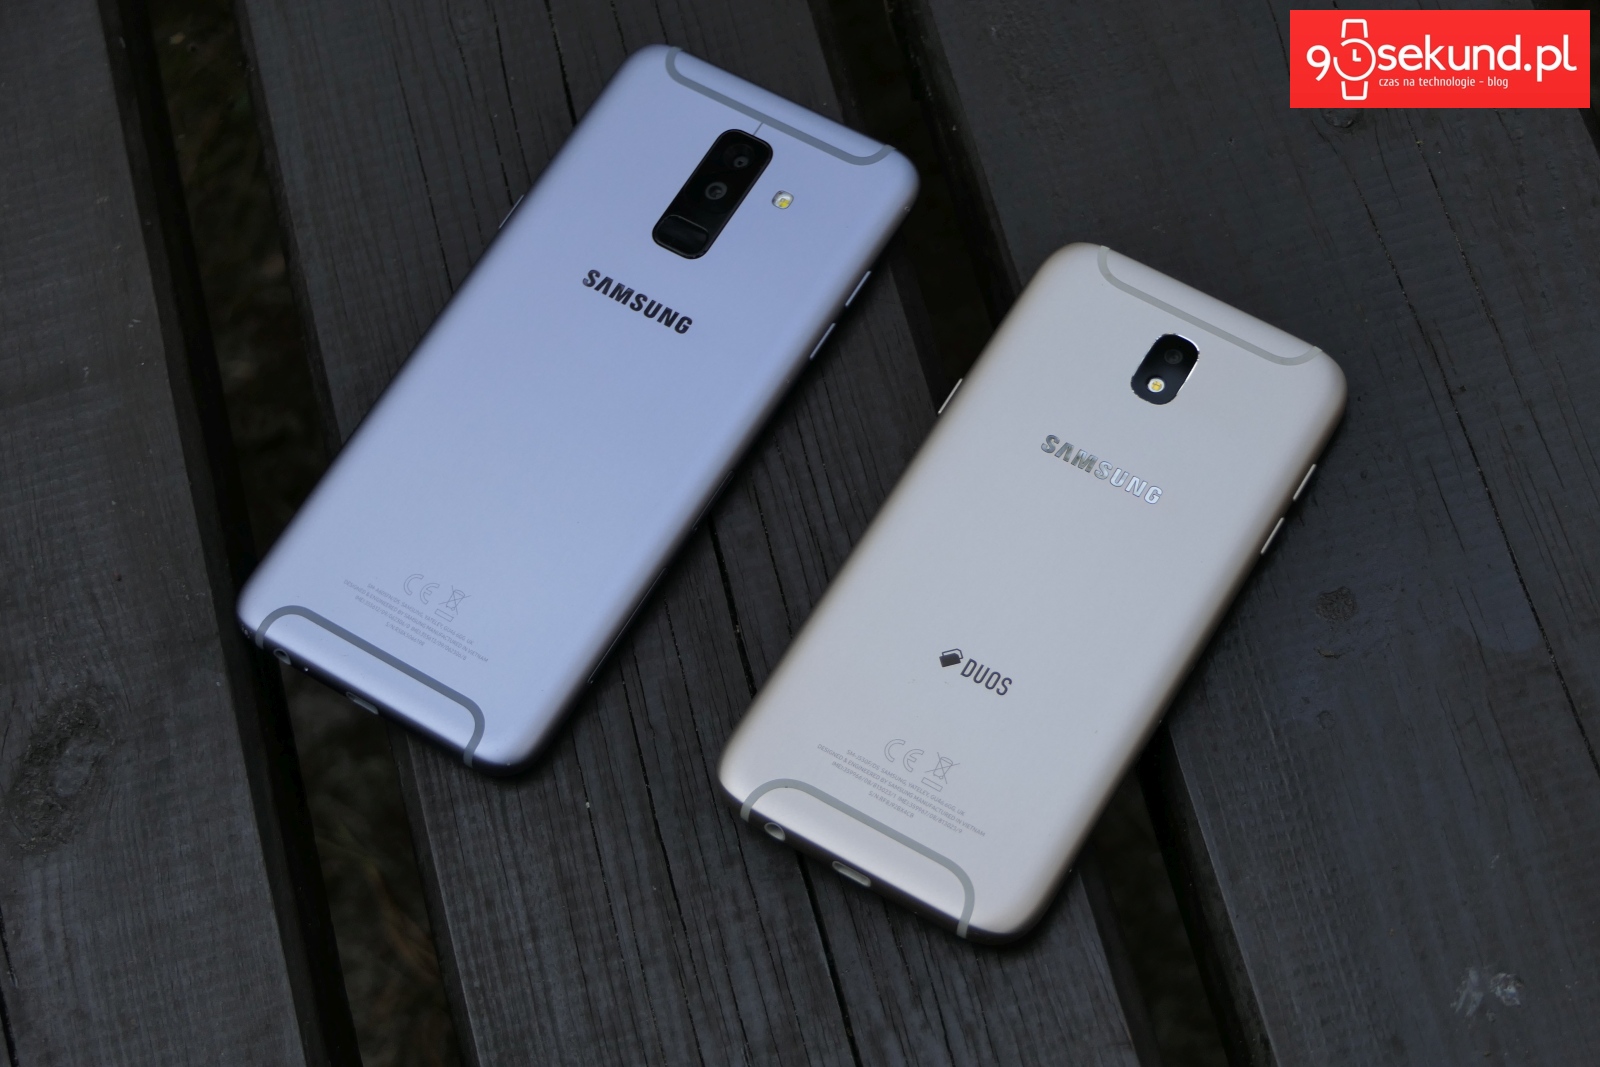 Od lewej: Srebrny Samsung Galaxy A6+ i złoty Galaxy J5 (2017) - 90sekund.pl - Michał Brożyński